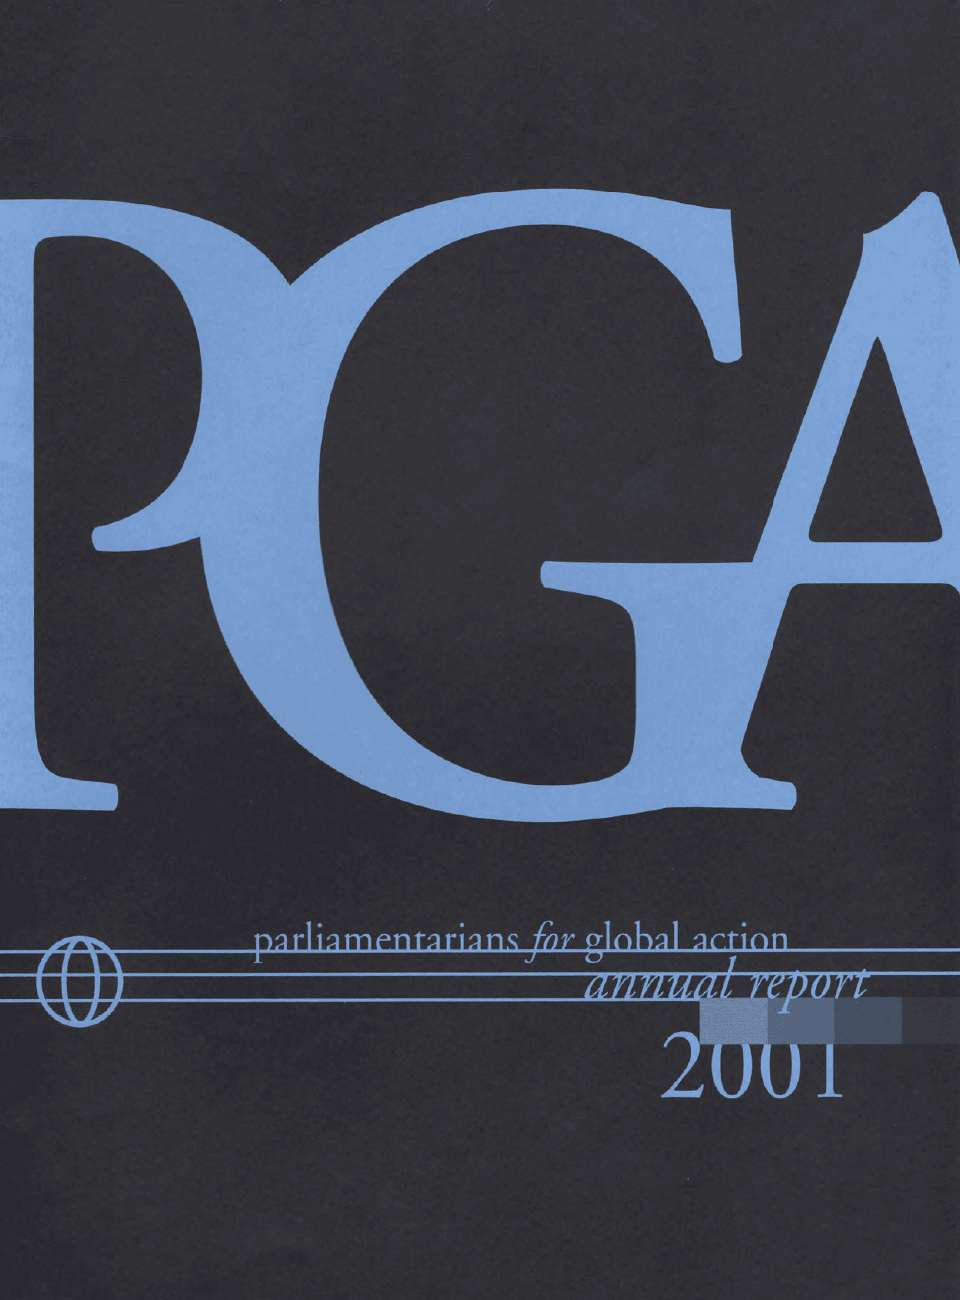 PGA Annual Report 2001